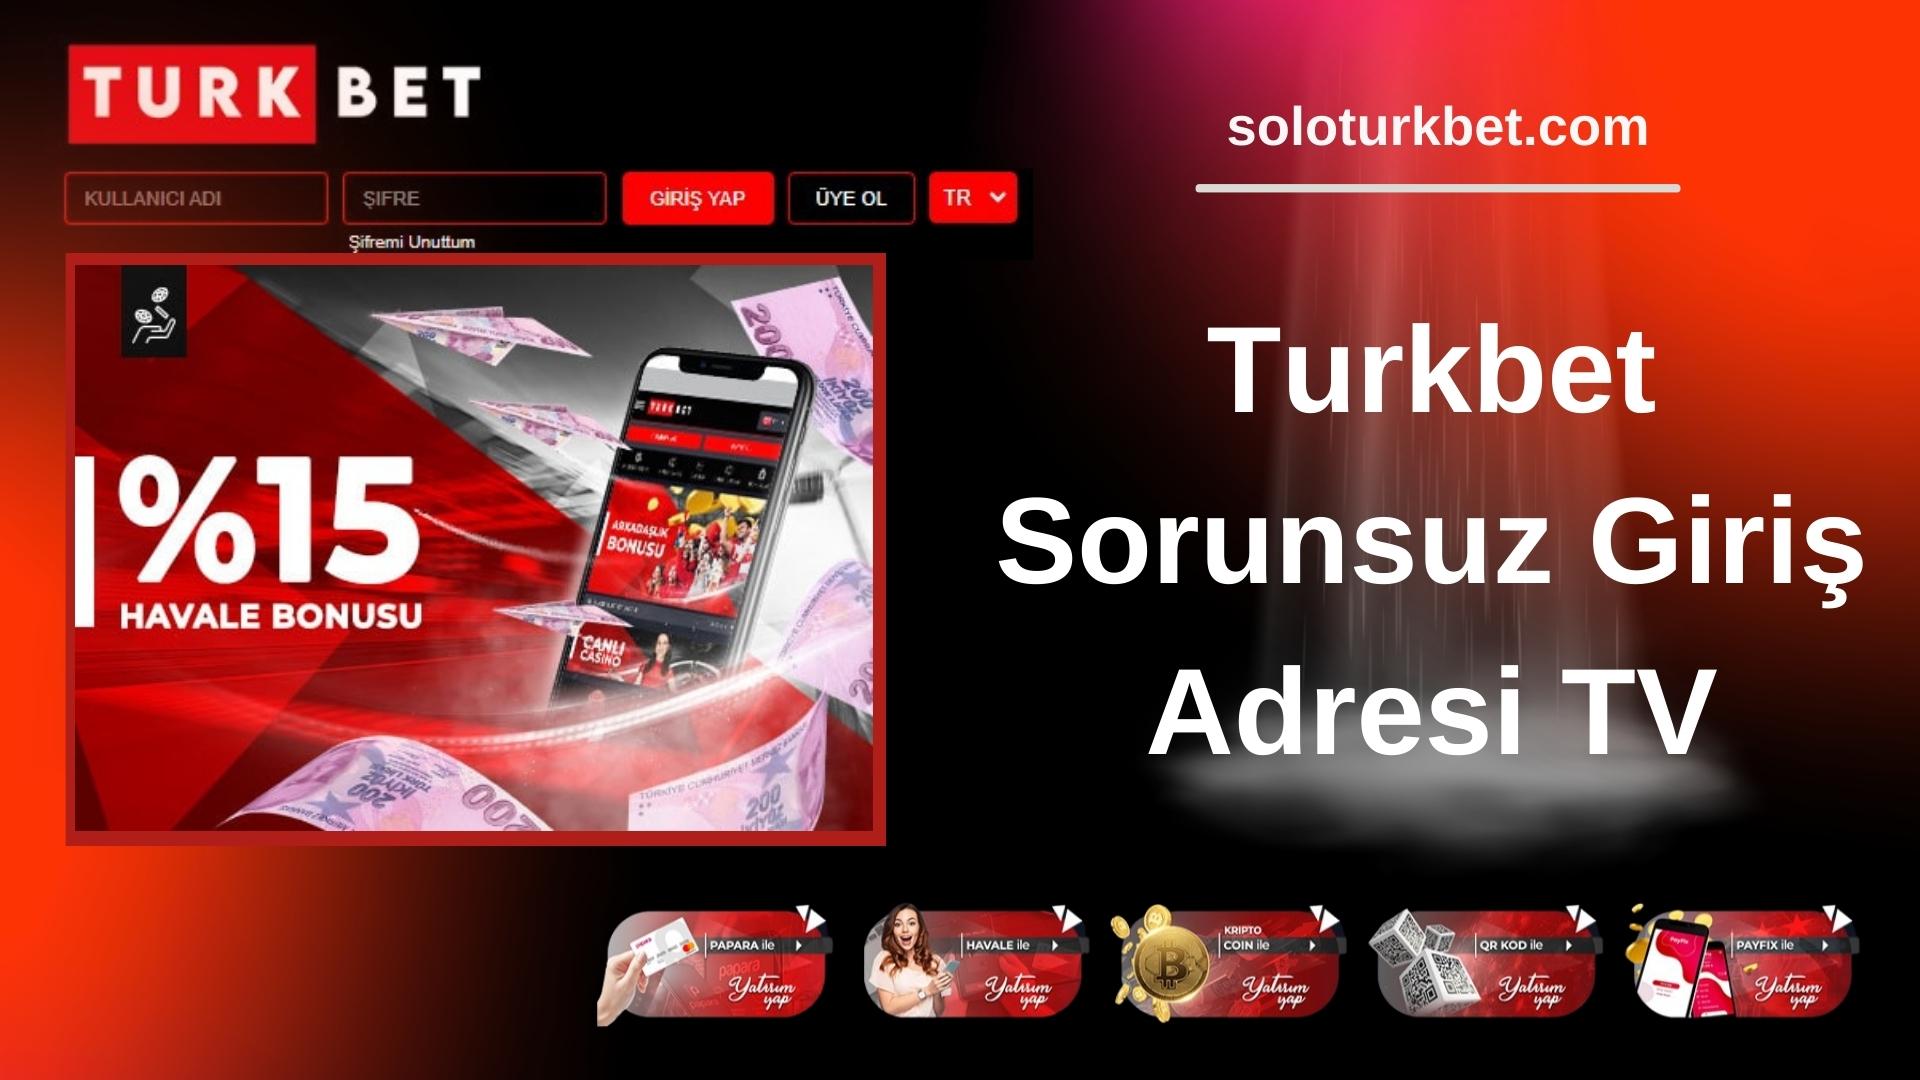 Turkbet Sorunsuz Giriş Adresi TV